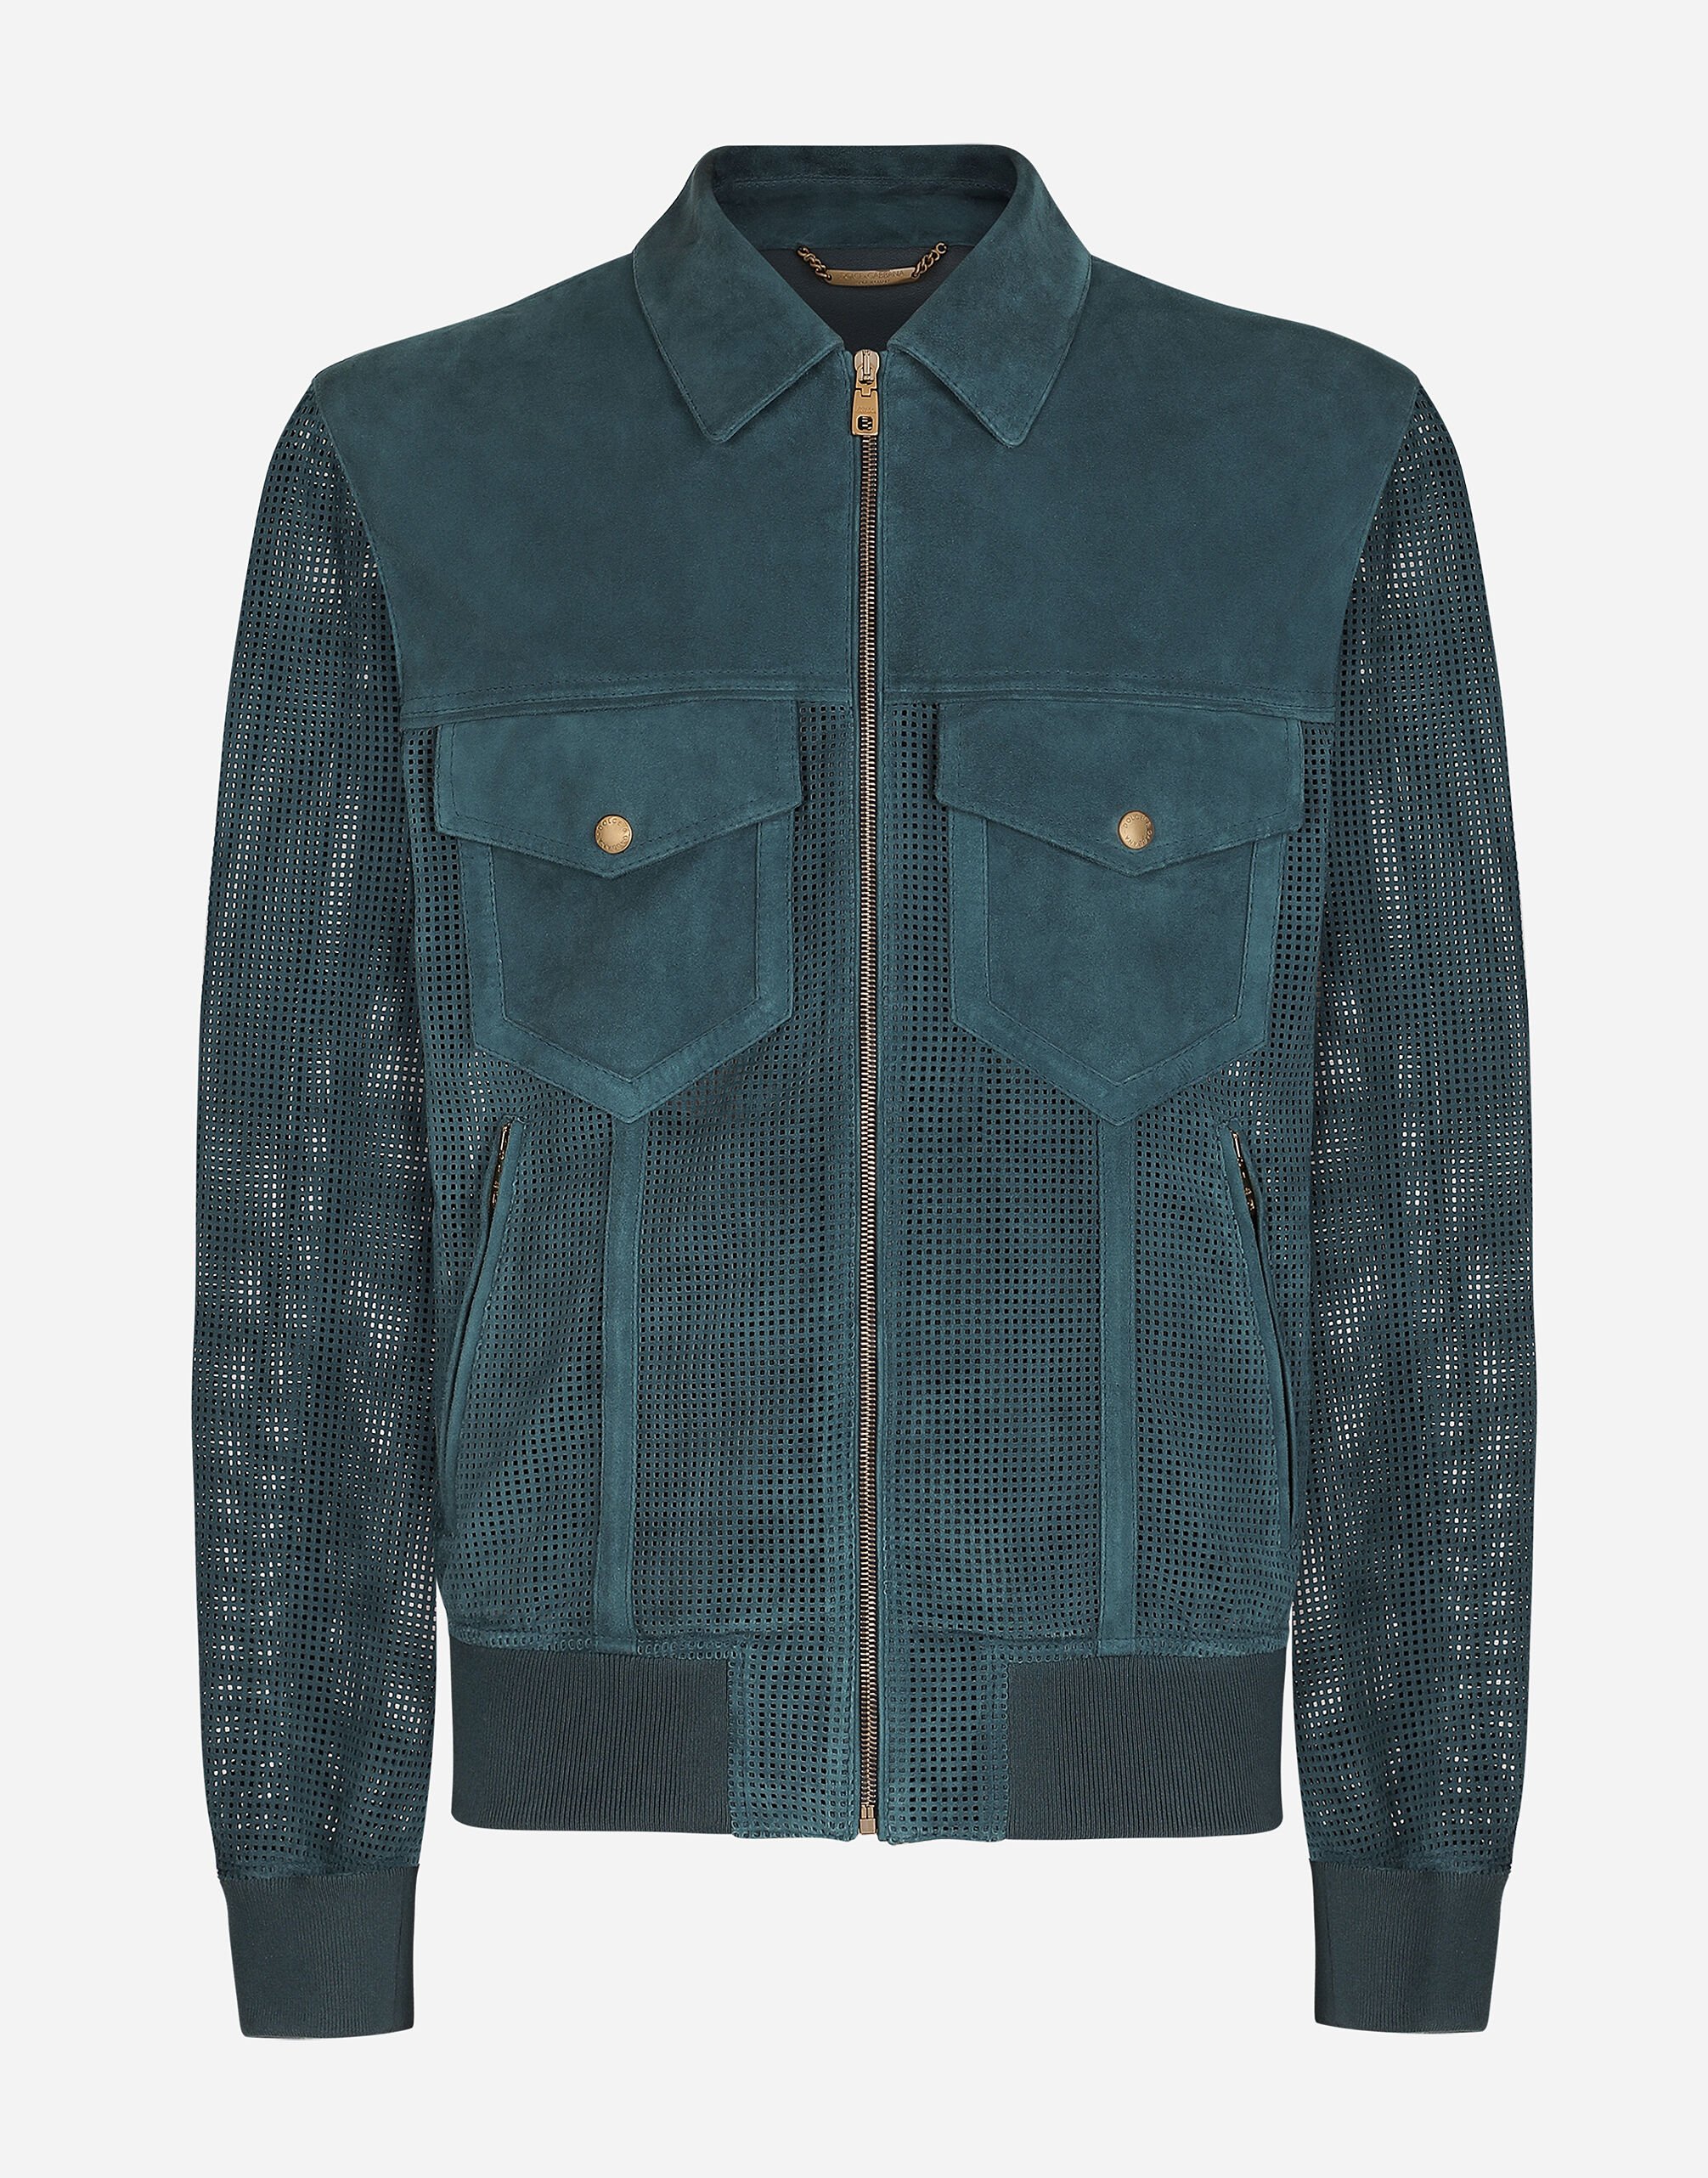 Dolce & Gabbana Perforated suede jacket Blue G9ARNTFUM7U